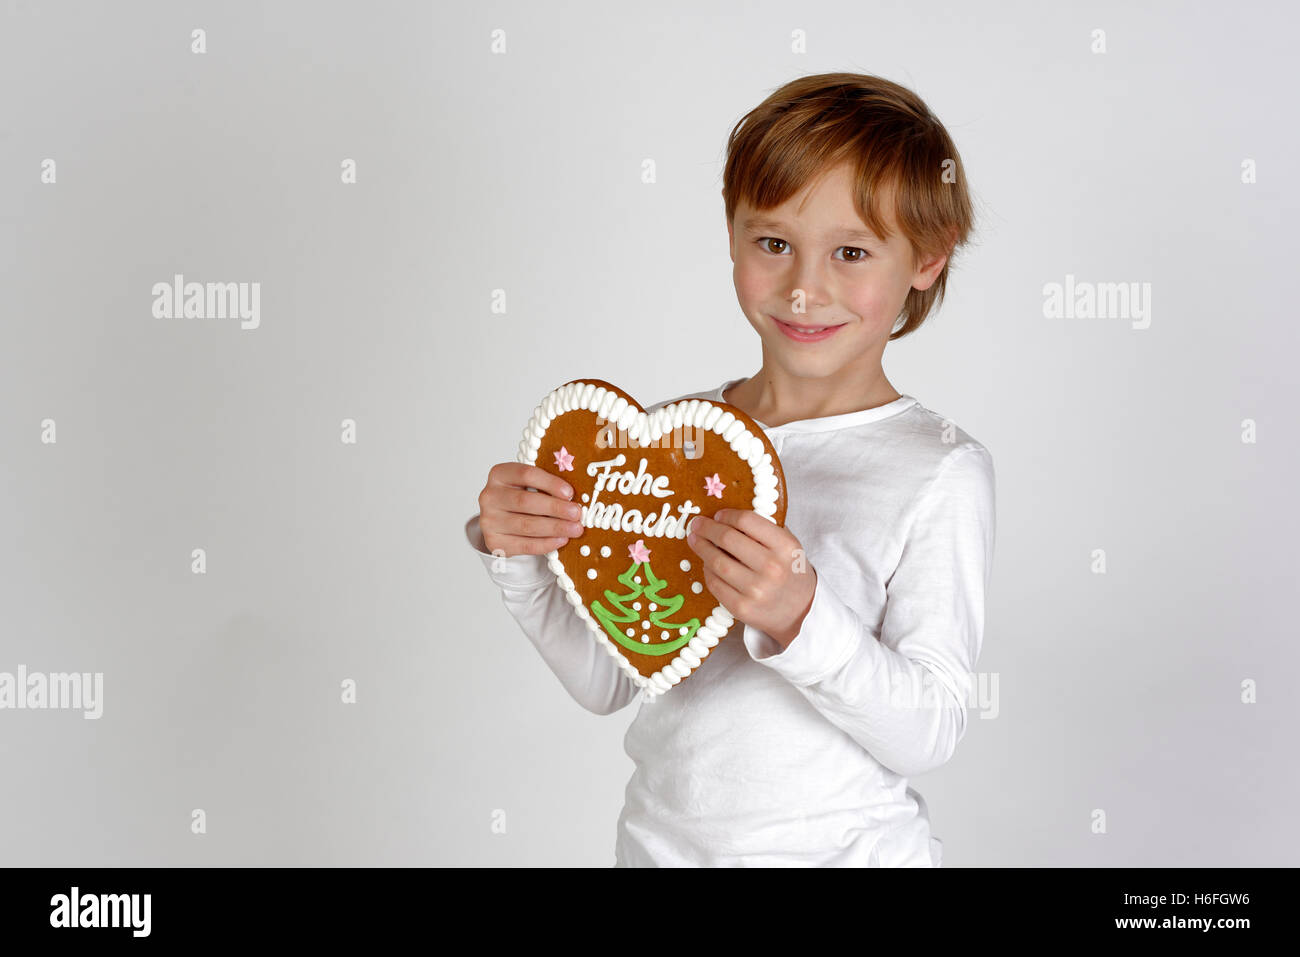 Kind, junge mit Lebkuchenherz, Frohe Wohnaccesoires, Frohe Weihnachten, Upper Bavaria, Bavaria, Germany Stockfoto